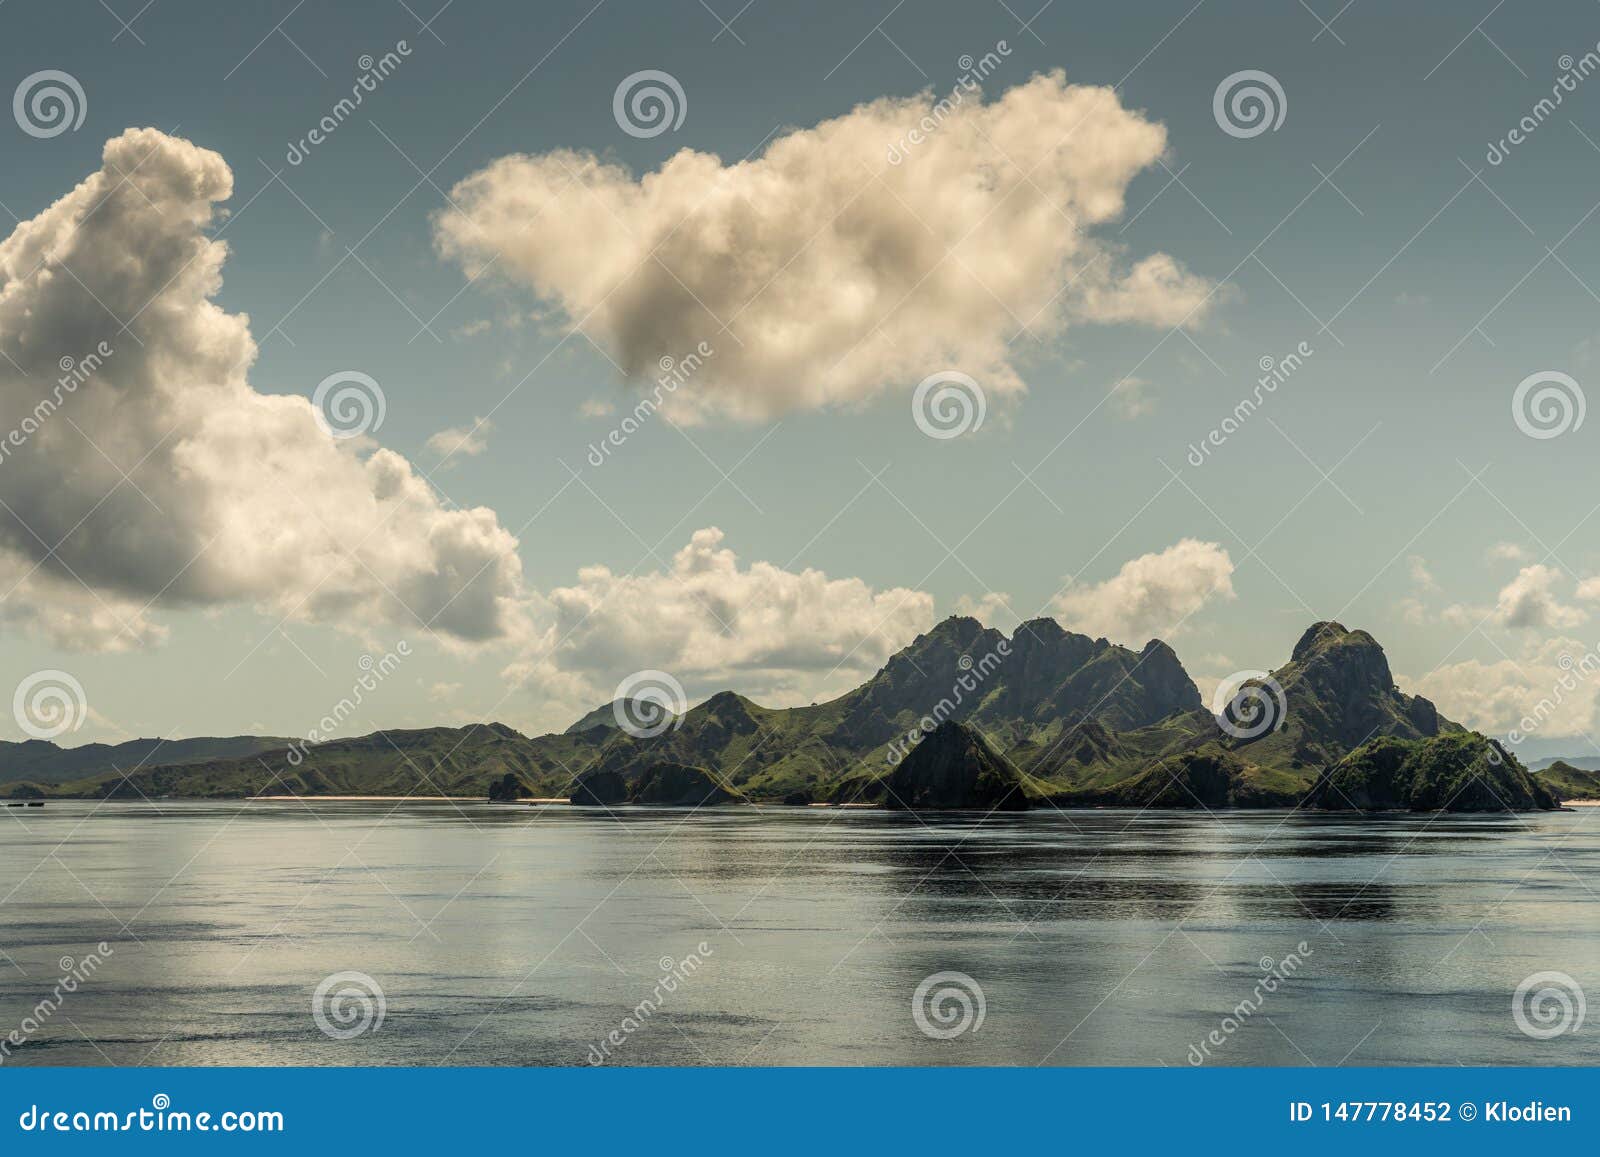 beaches and hill peaks on rinca island westside coast, indonesia